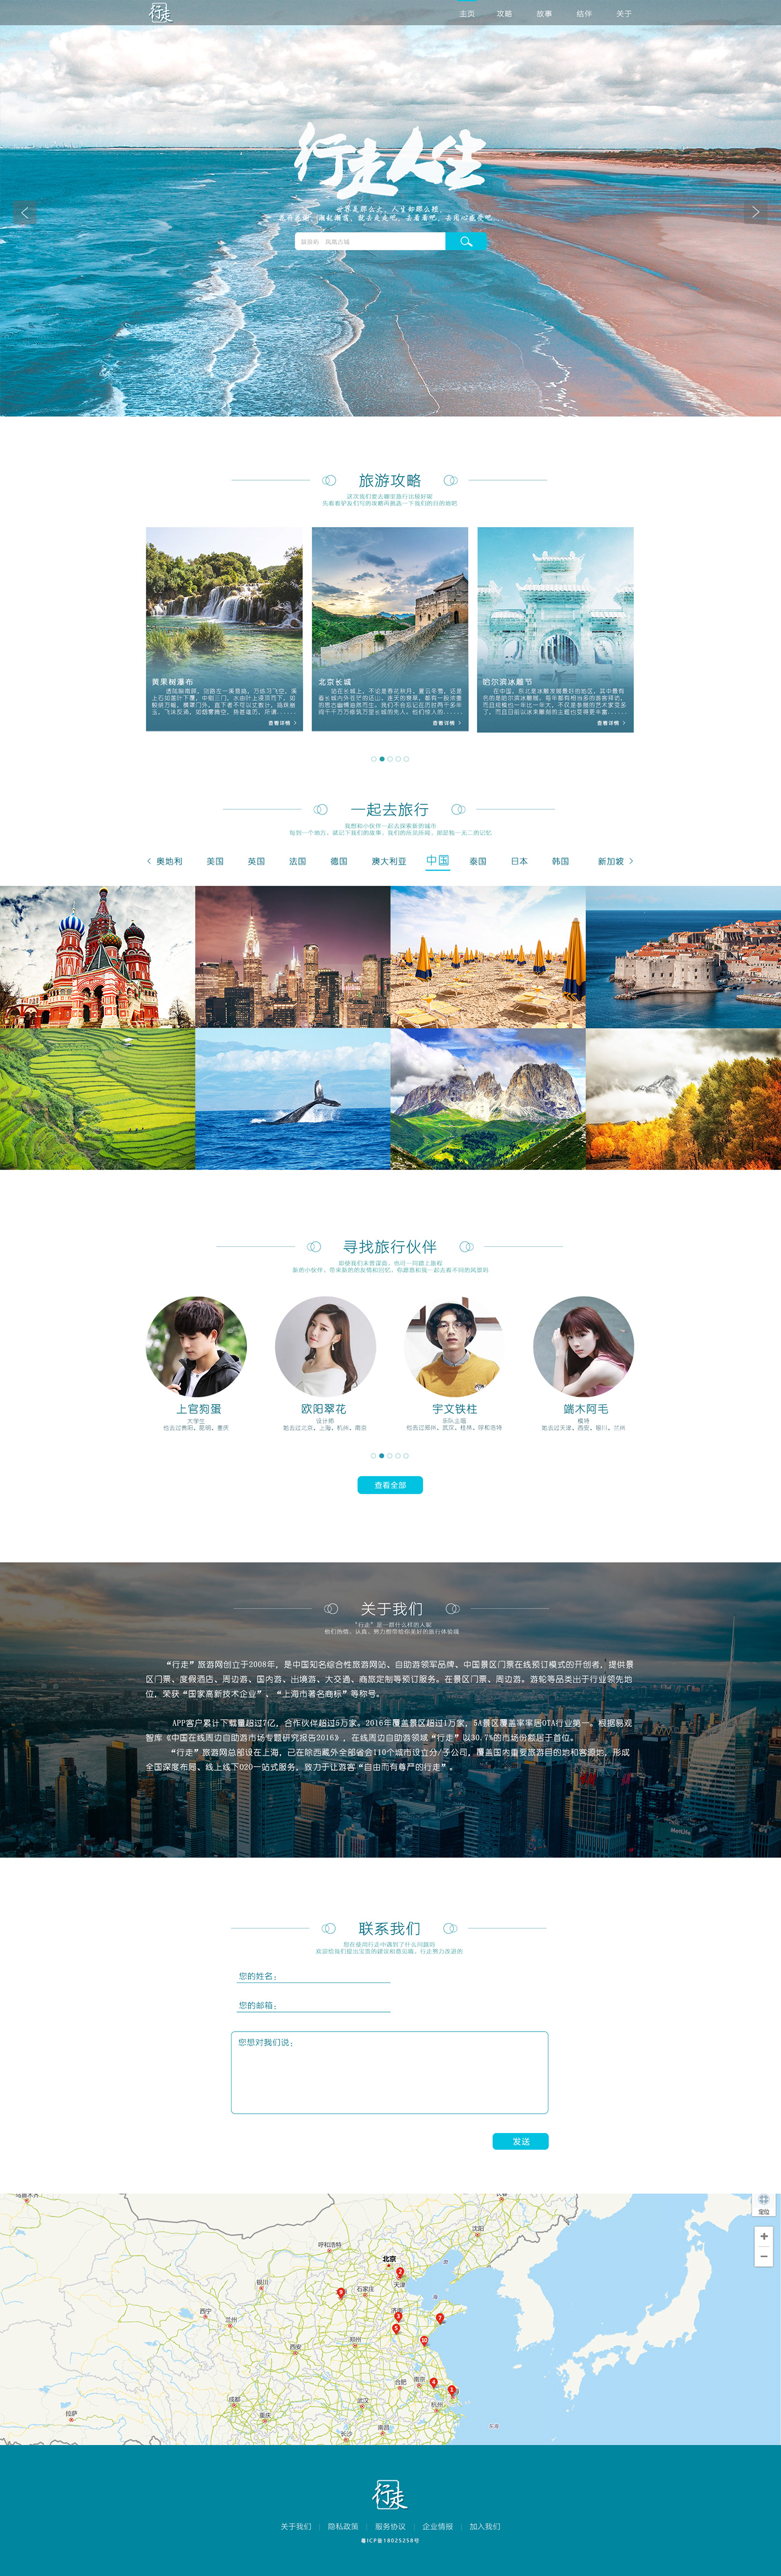 旅游 网站 网页设计 设计 Travel trip design site